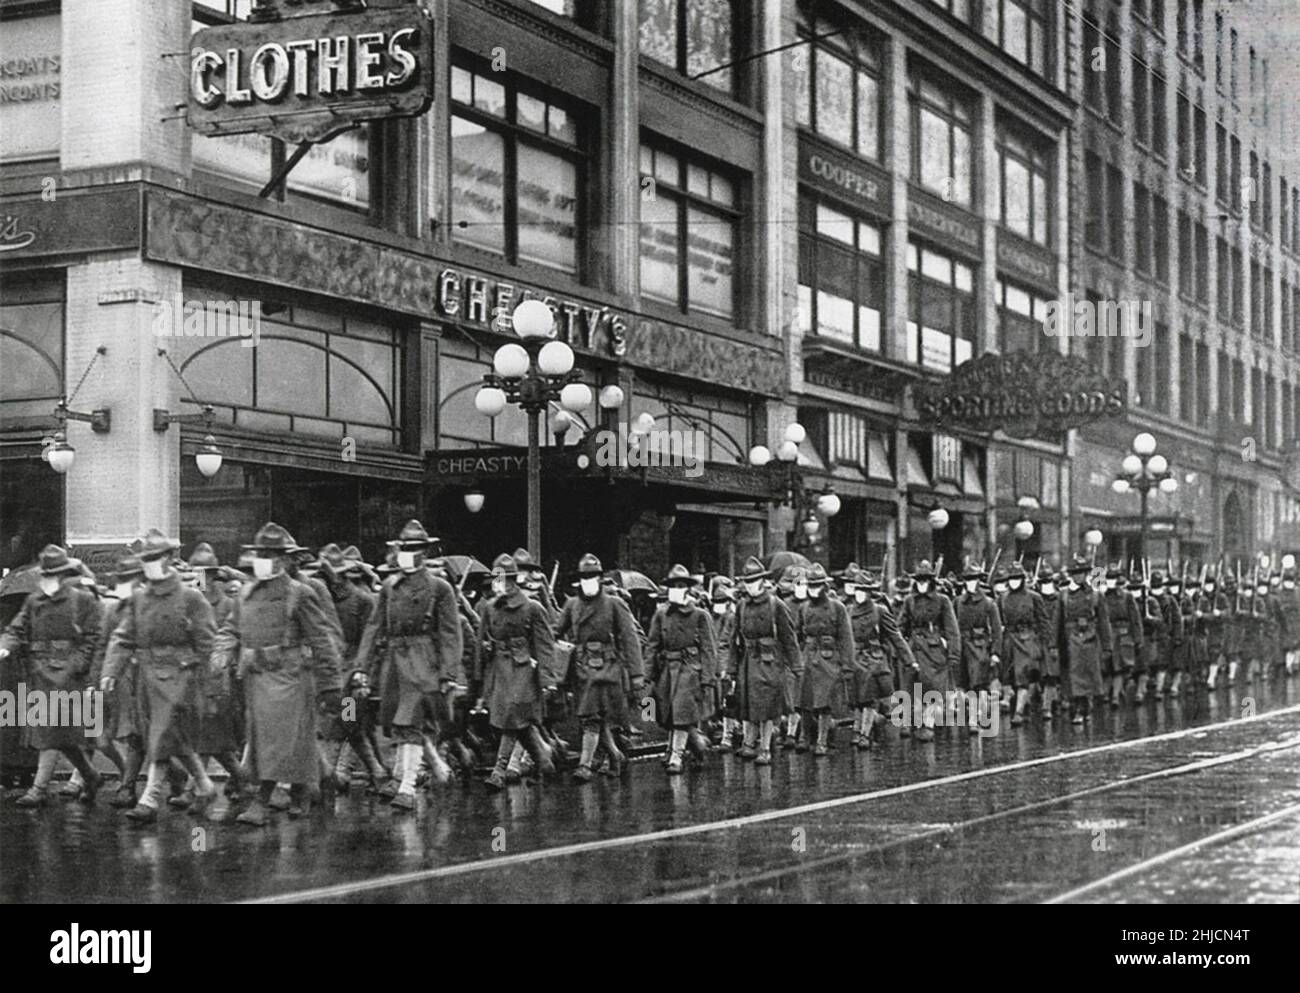 US-Soldaten des Regiments 39th marschieren in Seattle, WA, bevor sie nach Frankreich aufbrechen. Die Soldaten tragen Mullmasken, um sich vor Grippe (Grippe) zu schützen. Die Masken waren völlig wirkungslos. Nach dem Ersten Weltkrieg gab es eine globale Grippepandemie, die als Spanische Grippe (1918-1919) bekannt war. Ein Fünftel der Weltbevölkerung war infiziert, und zwischen 20 und 50 Millionen Menschen starben. Solche Pandemien treten auf, wenn ein neues infektiöses Virus auftritt, für das die menschliche Bevölkerung keine Immunität besitzt. Stockfoto